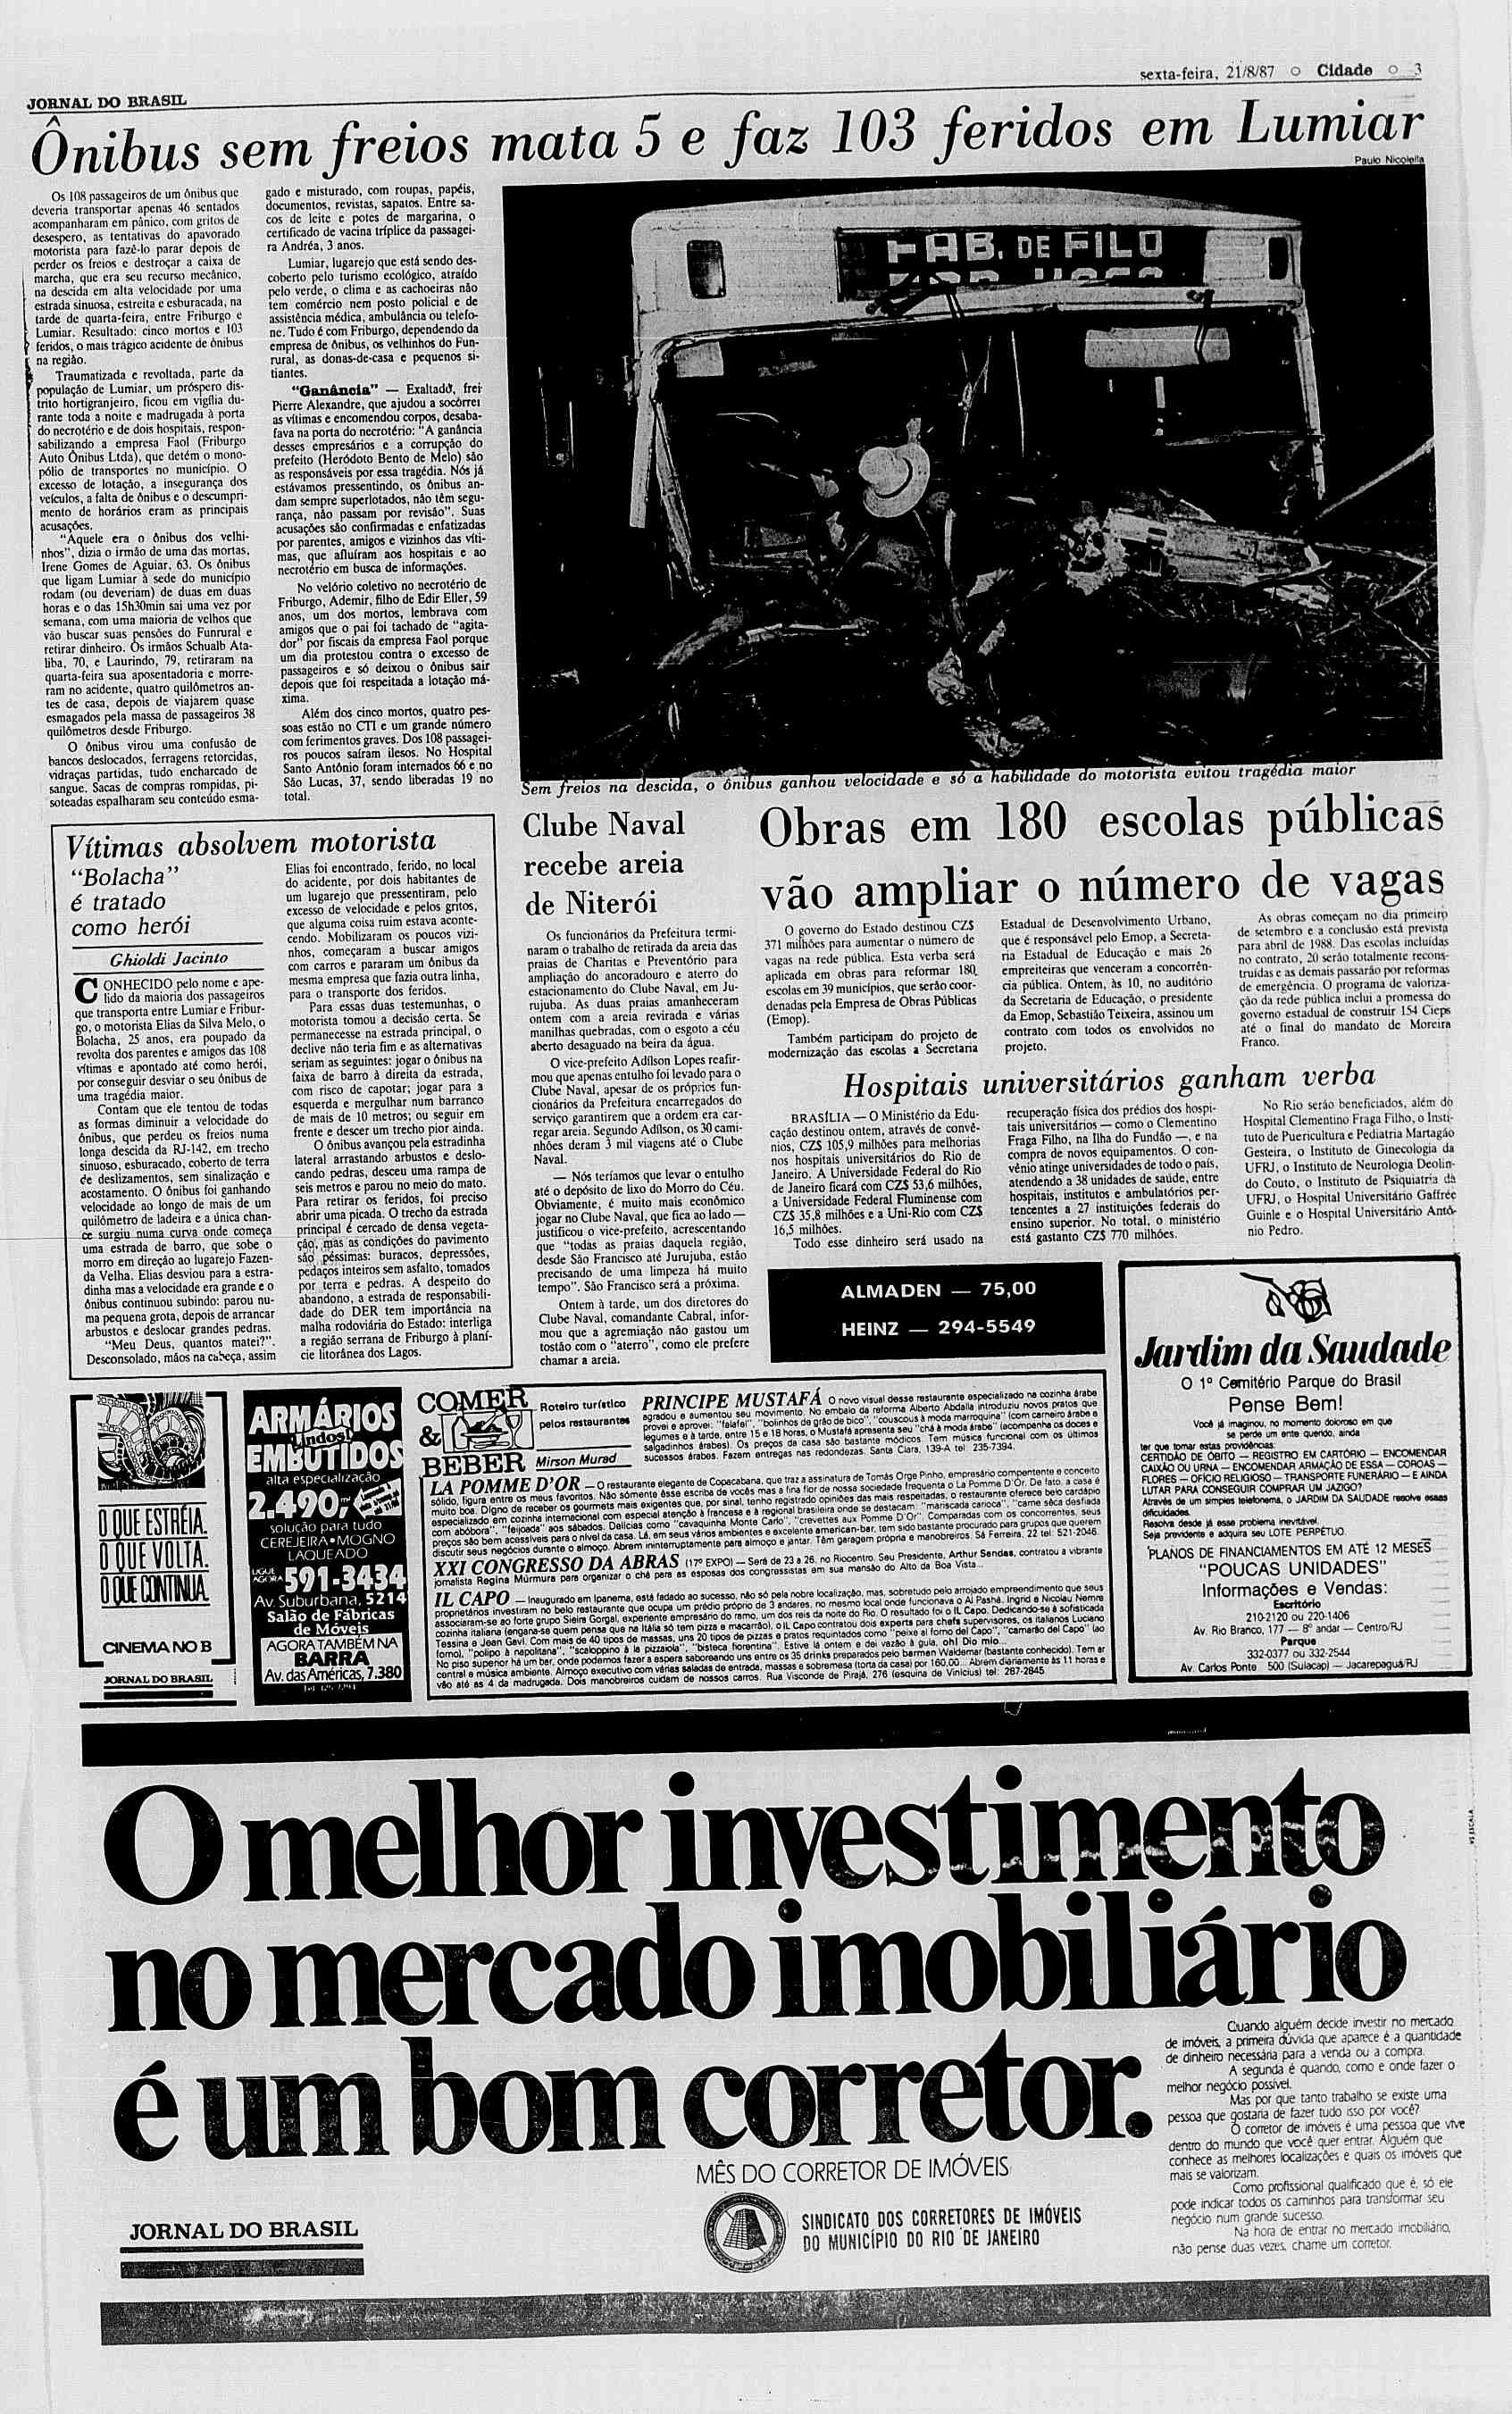 sexta-feira. 21/8/87 o Cidade o 3 JORNAL DO BRASL # quilômetros desde Friburgo. O ônibus virou uma confusão de bancos deslocados, ferragens retorcidas, vidraças partidas, tudo encharcado de sangue.